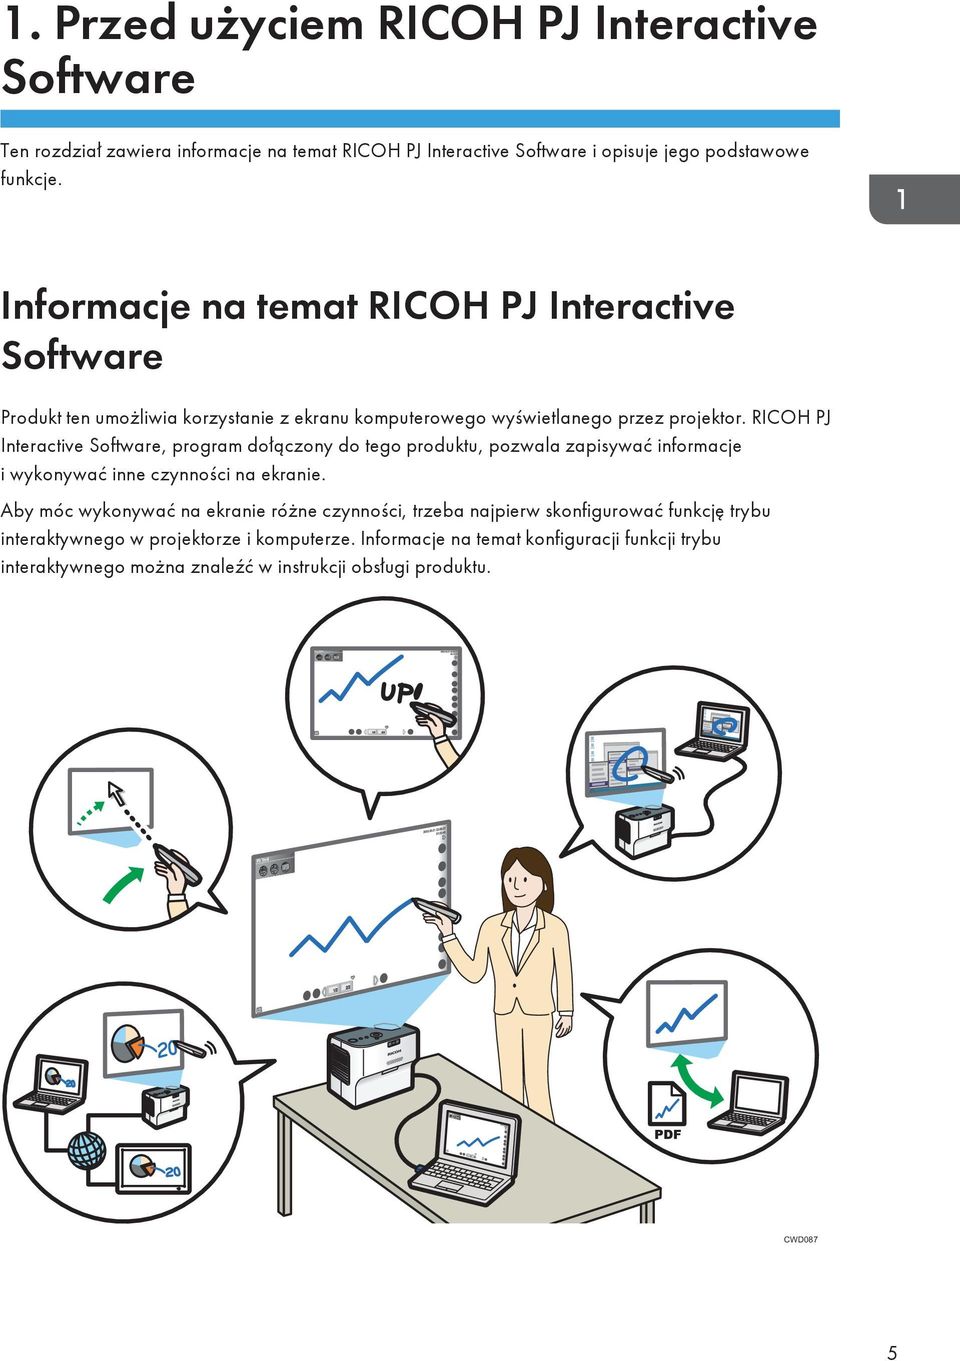 RICOH PJ Interactive Software, program dołączony do tego produktu, pozwala zapisywać informacje i wykonywać inne czynności na ekranie.